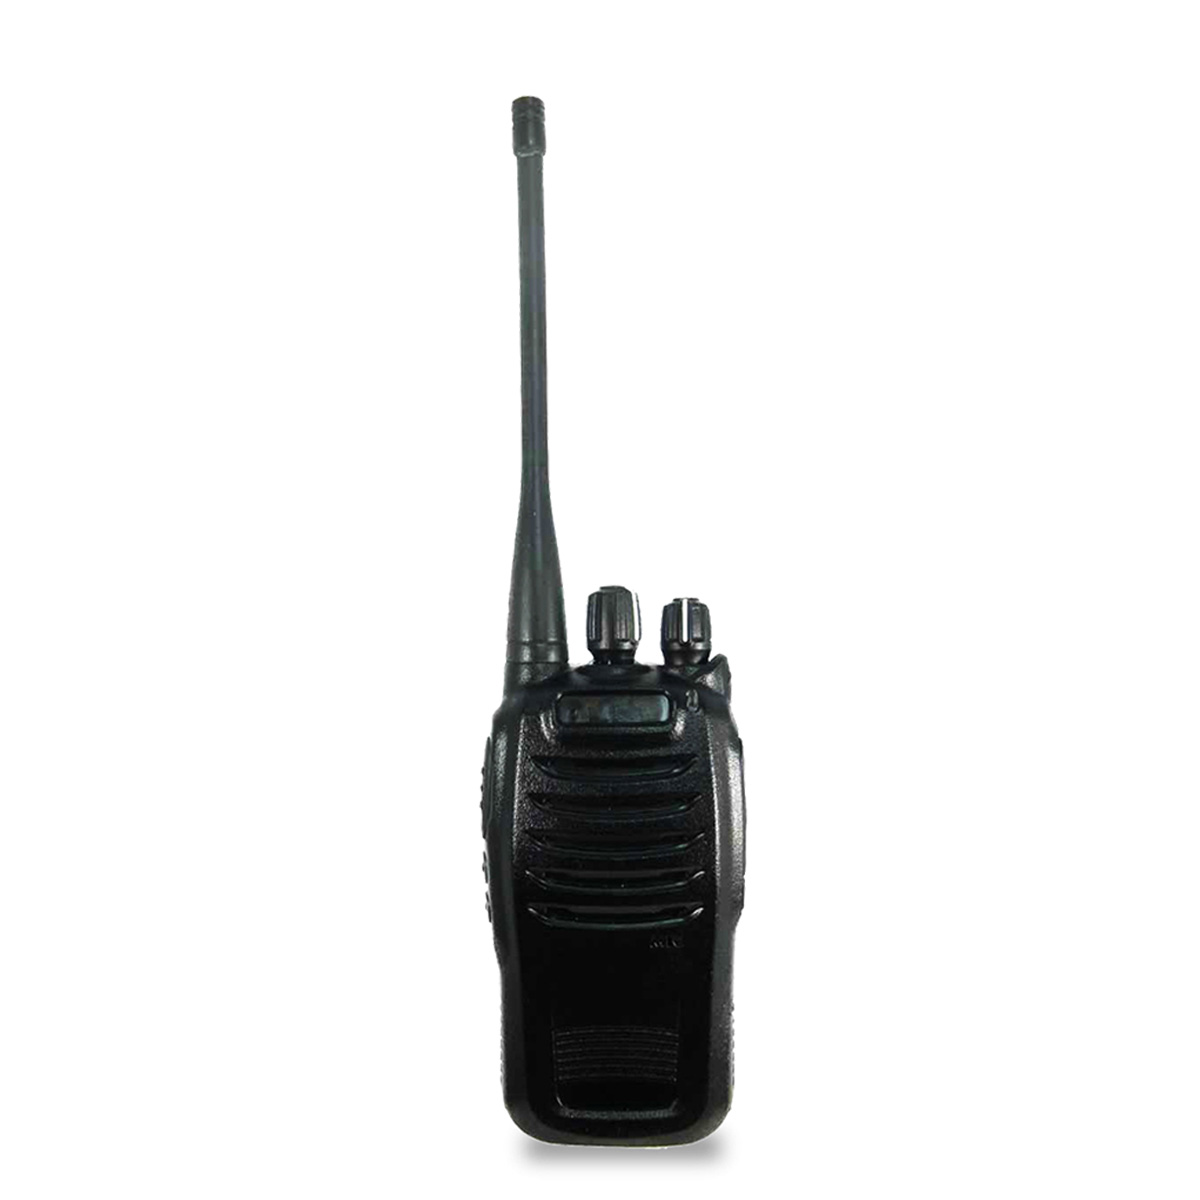 Radio Genérico TH-2800 Analógico UHF 400-470 MHz